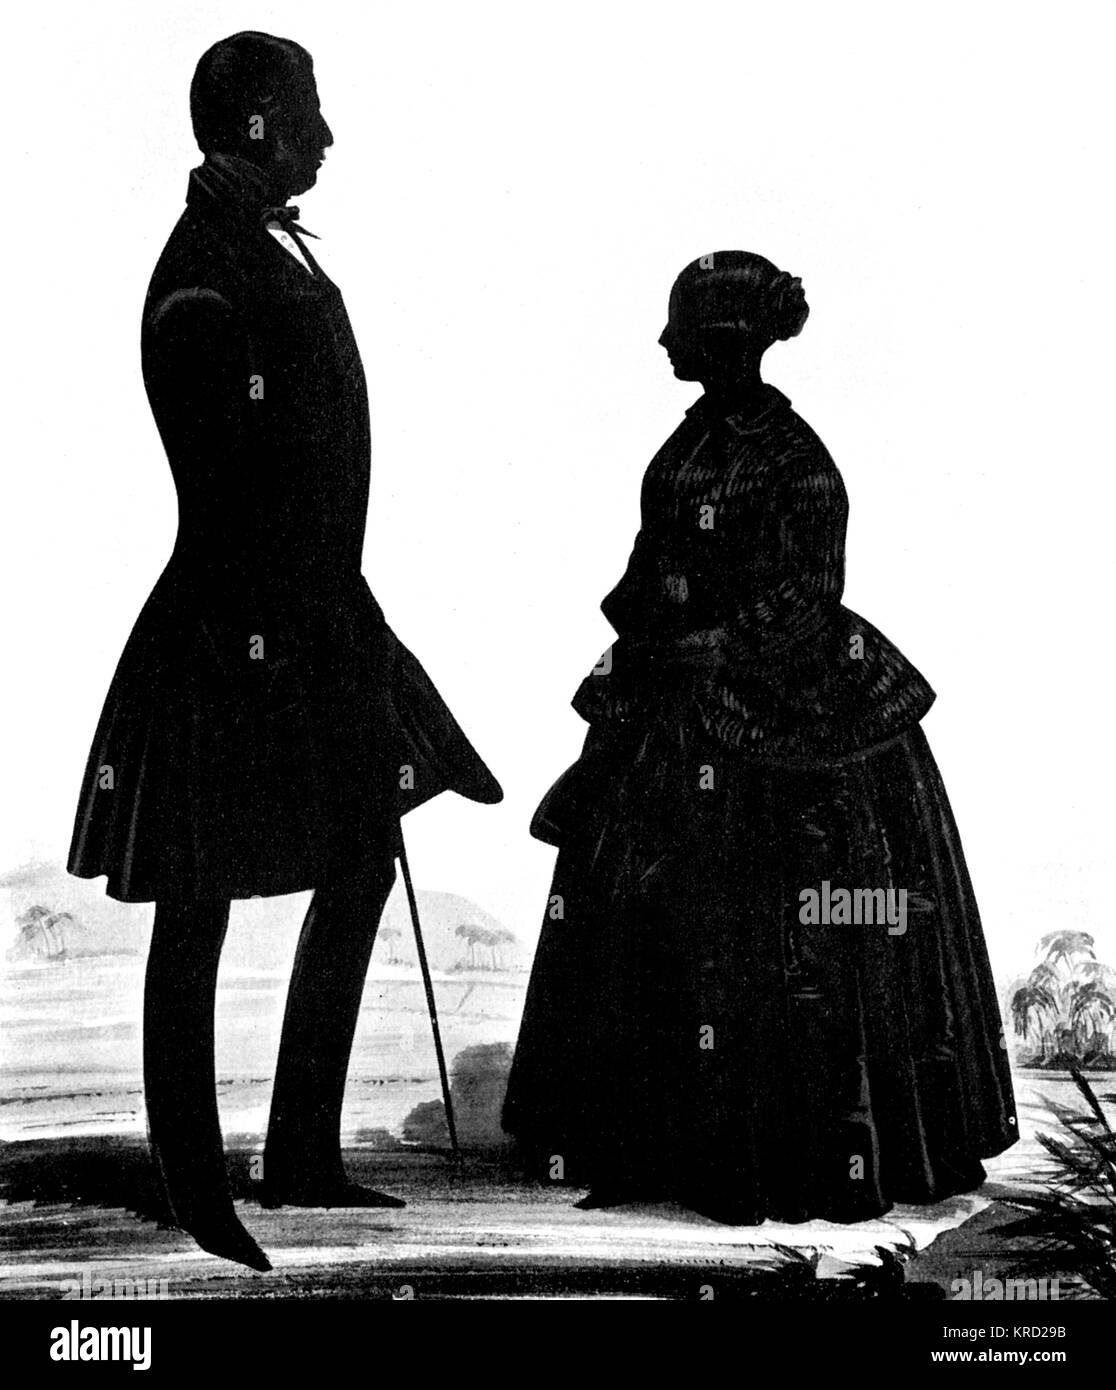 Une silhouette portrait de la reine Victoria avec son premier ministre, lord Melbourne, probablement couper par Atkinson, de Windsor et d'or au crayon. Date : c.1840 Banque D'Images